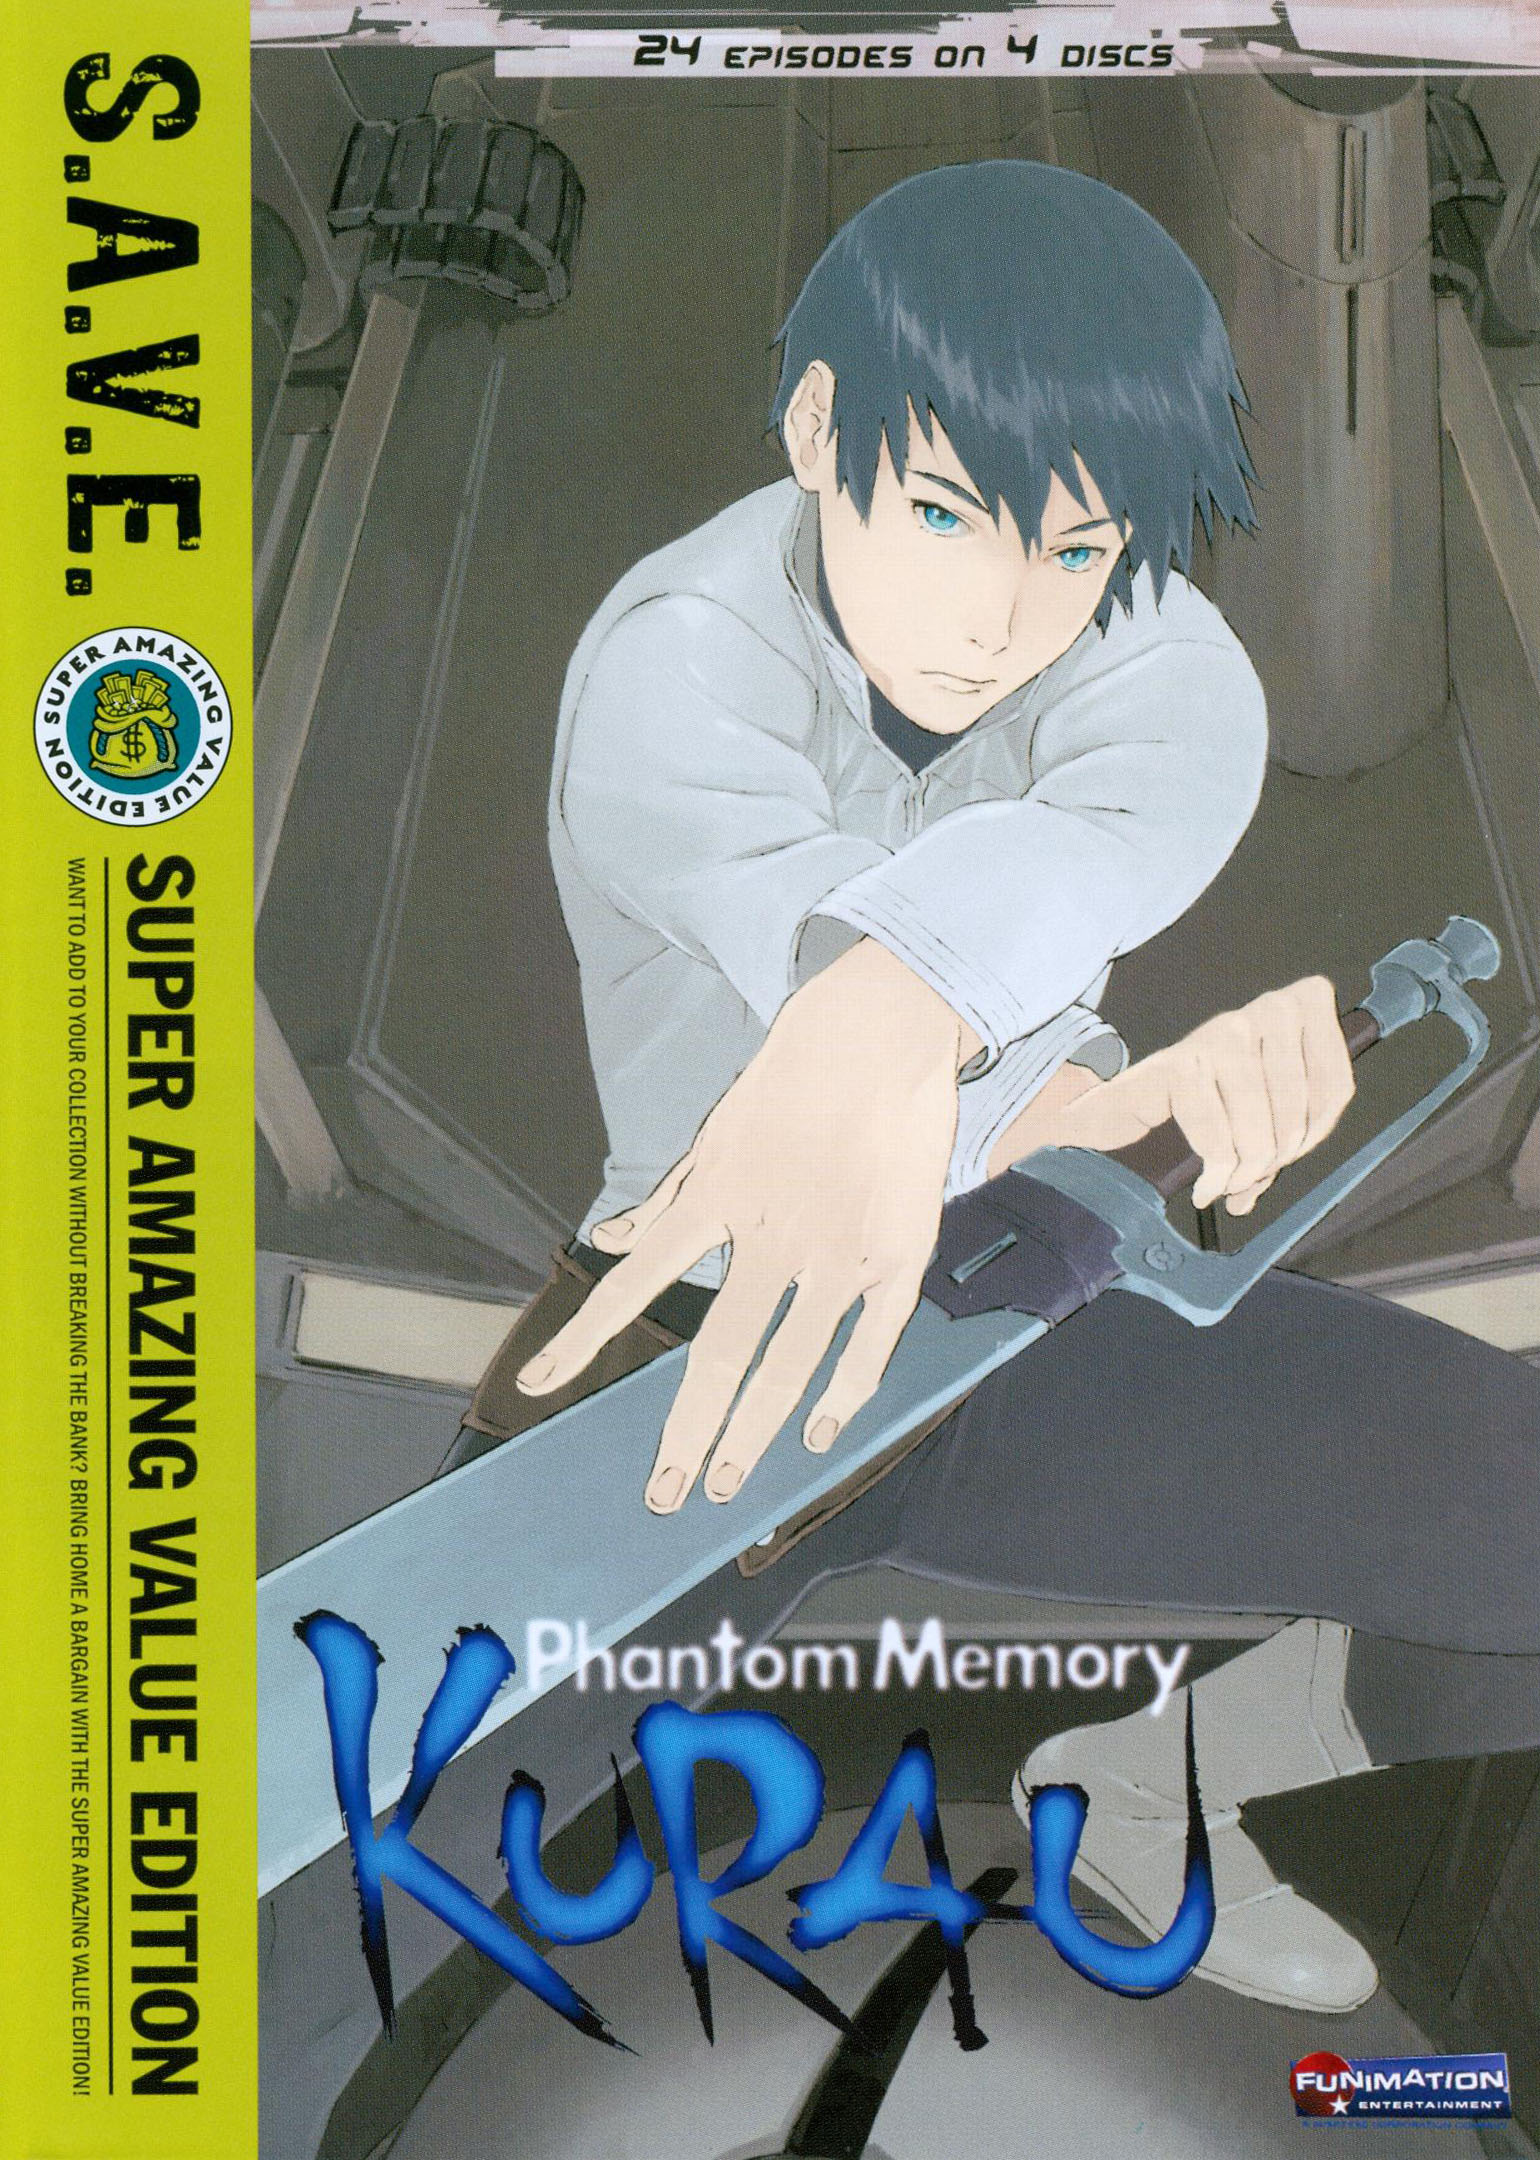 Best Buy: Kurau Phantom Memory: The Complete Series [4 Discs 